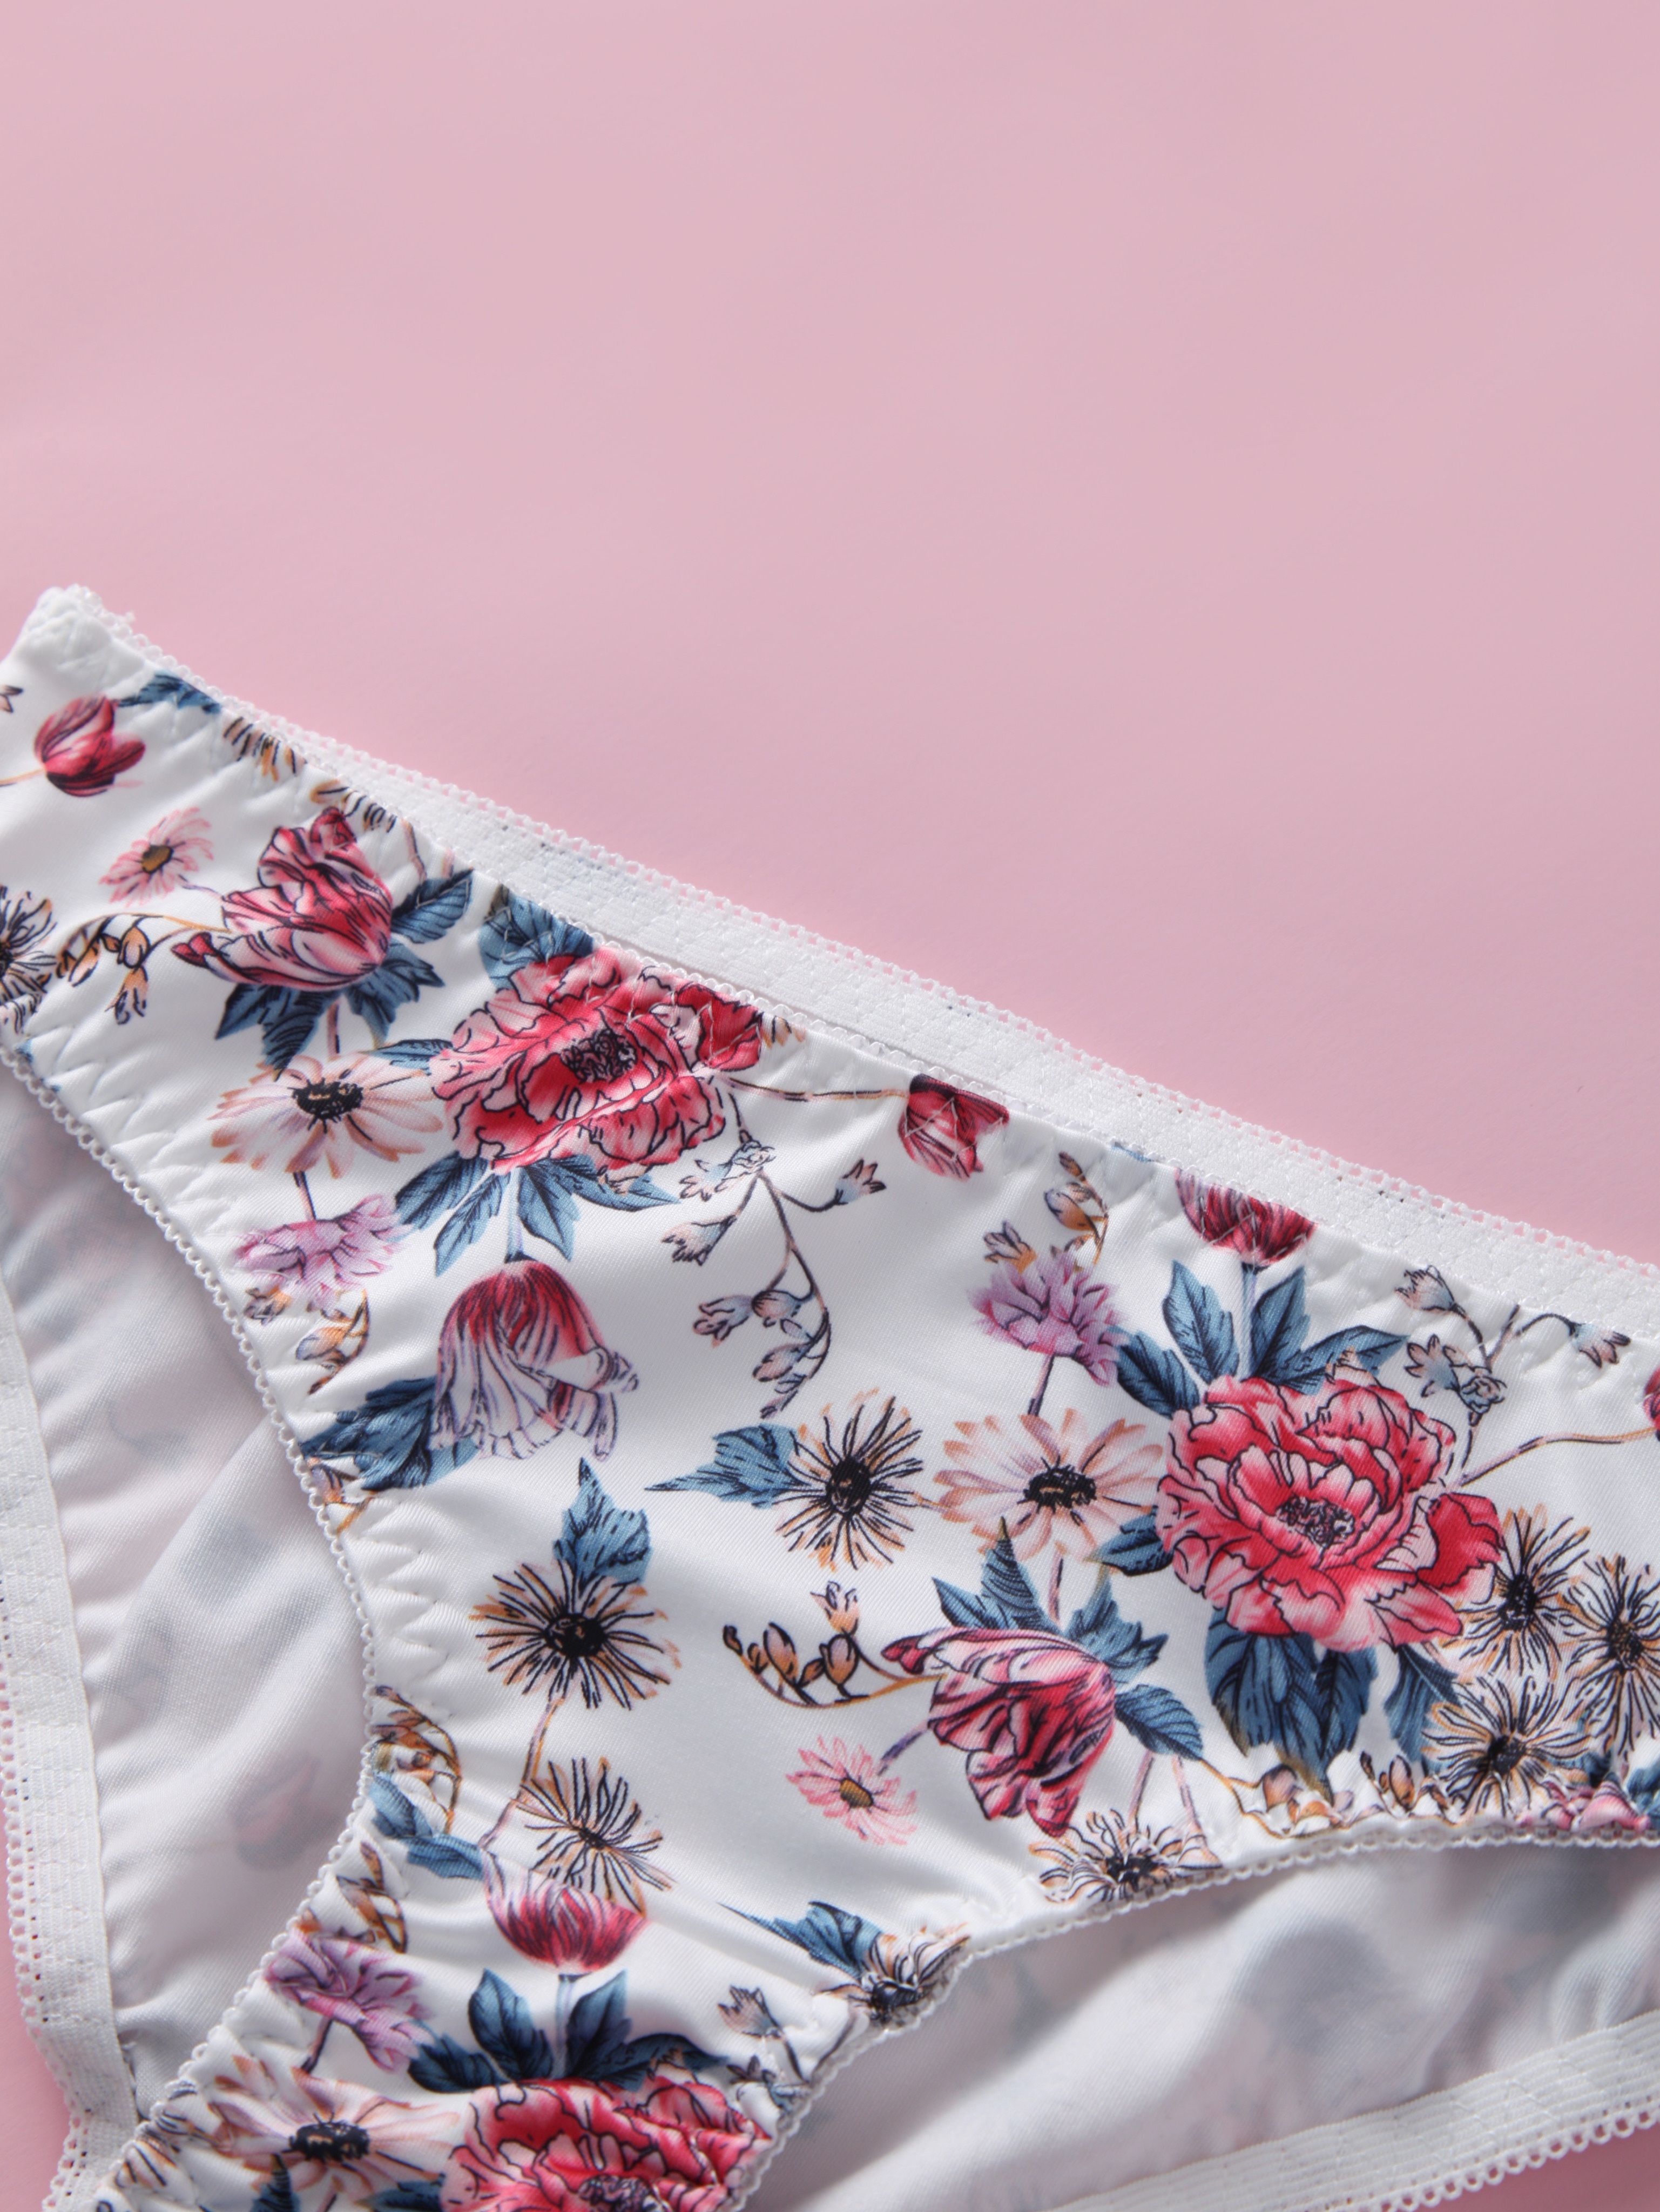 Buy THE MEGA STORE Light Pink Bra - Panty Lingerie Set for Women